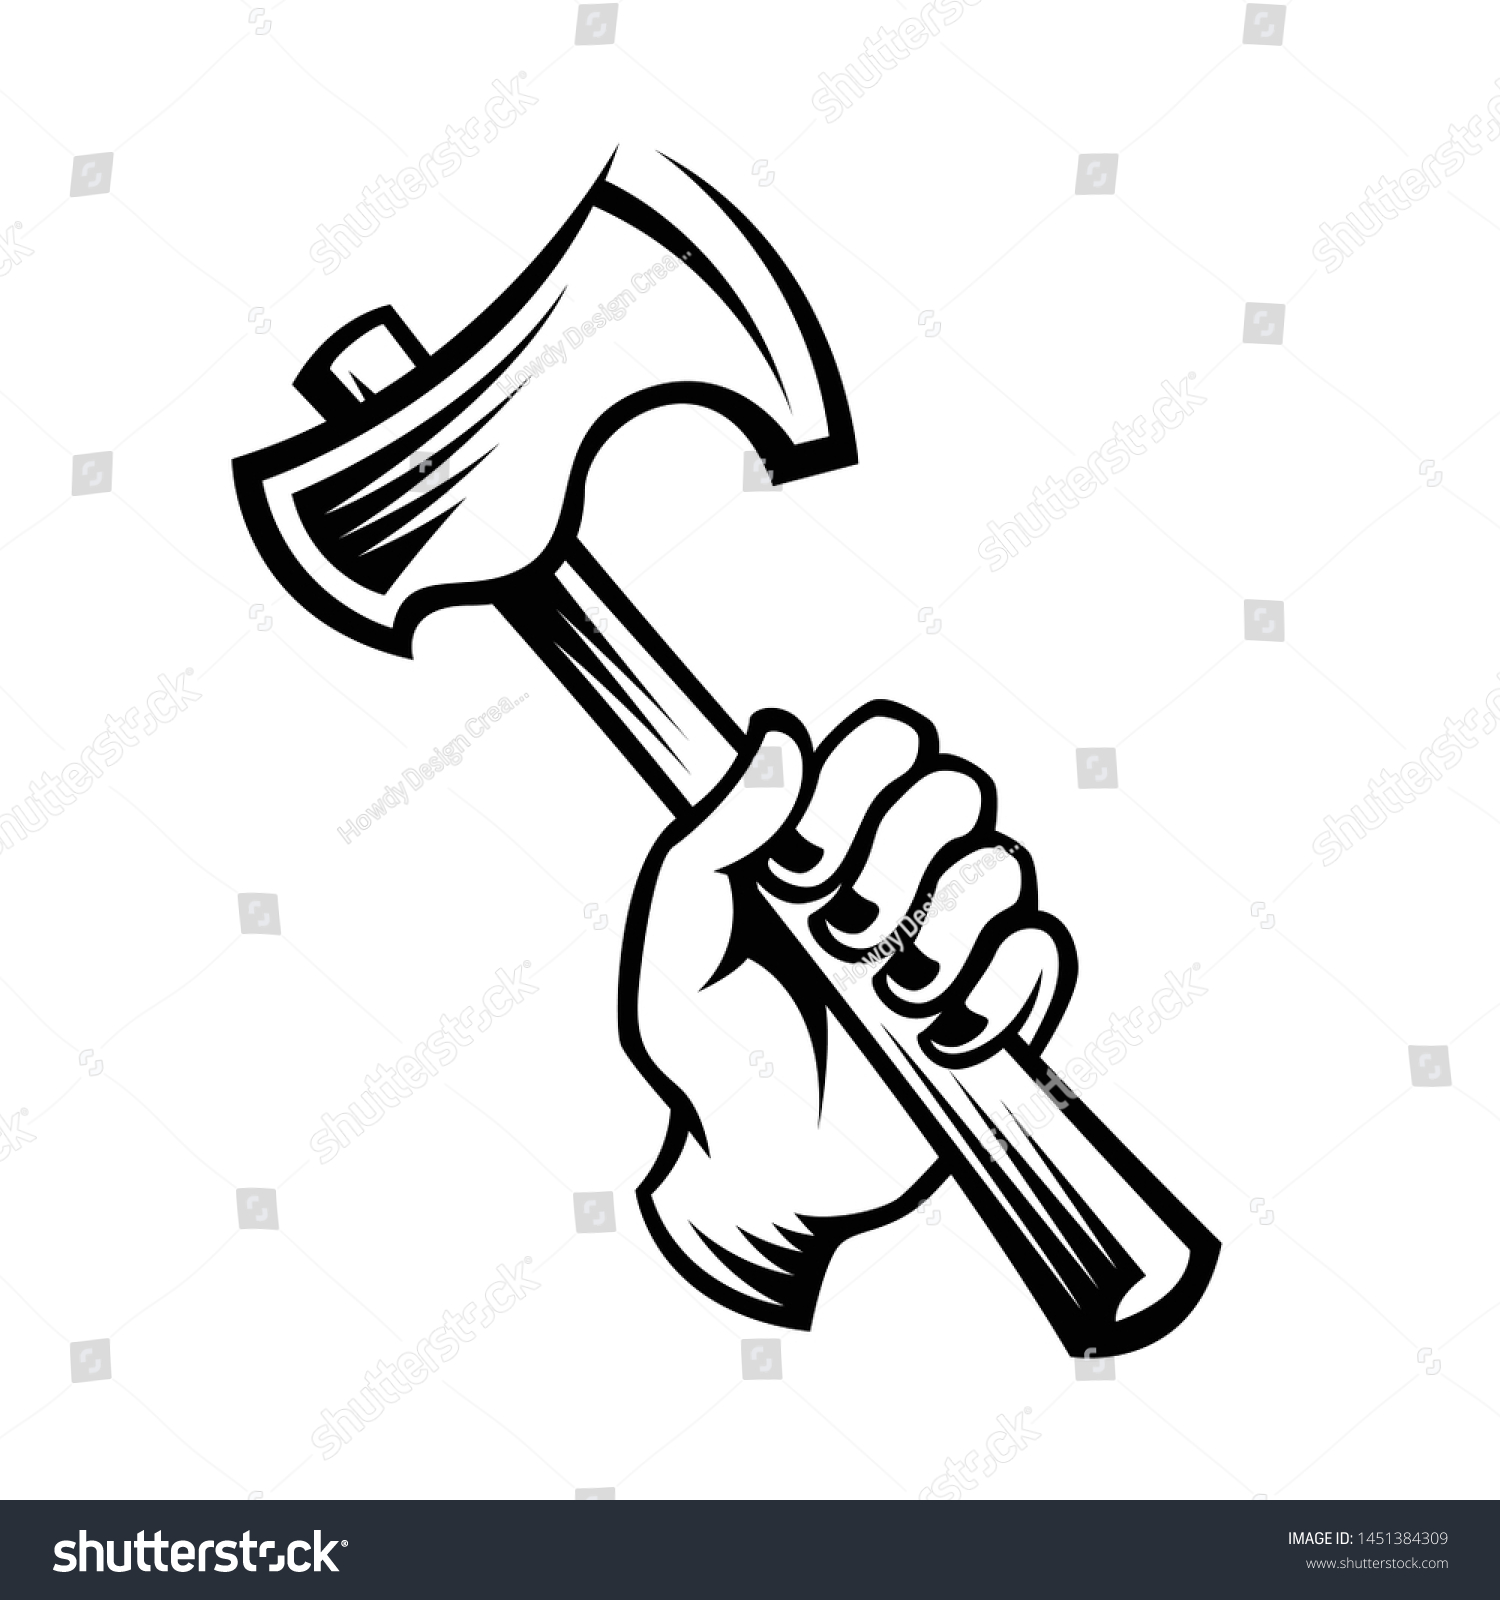 SVG of hand holding axe, axe throwing vector logo template svg